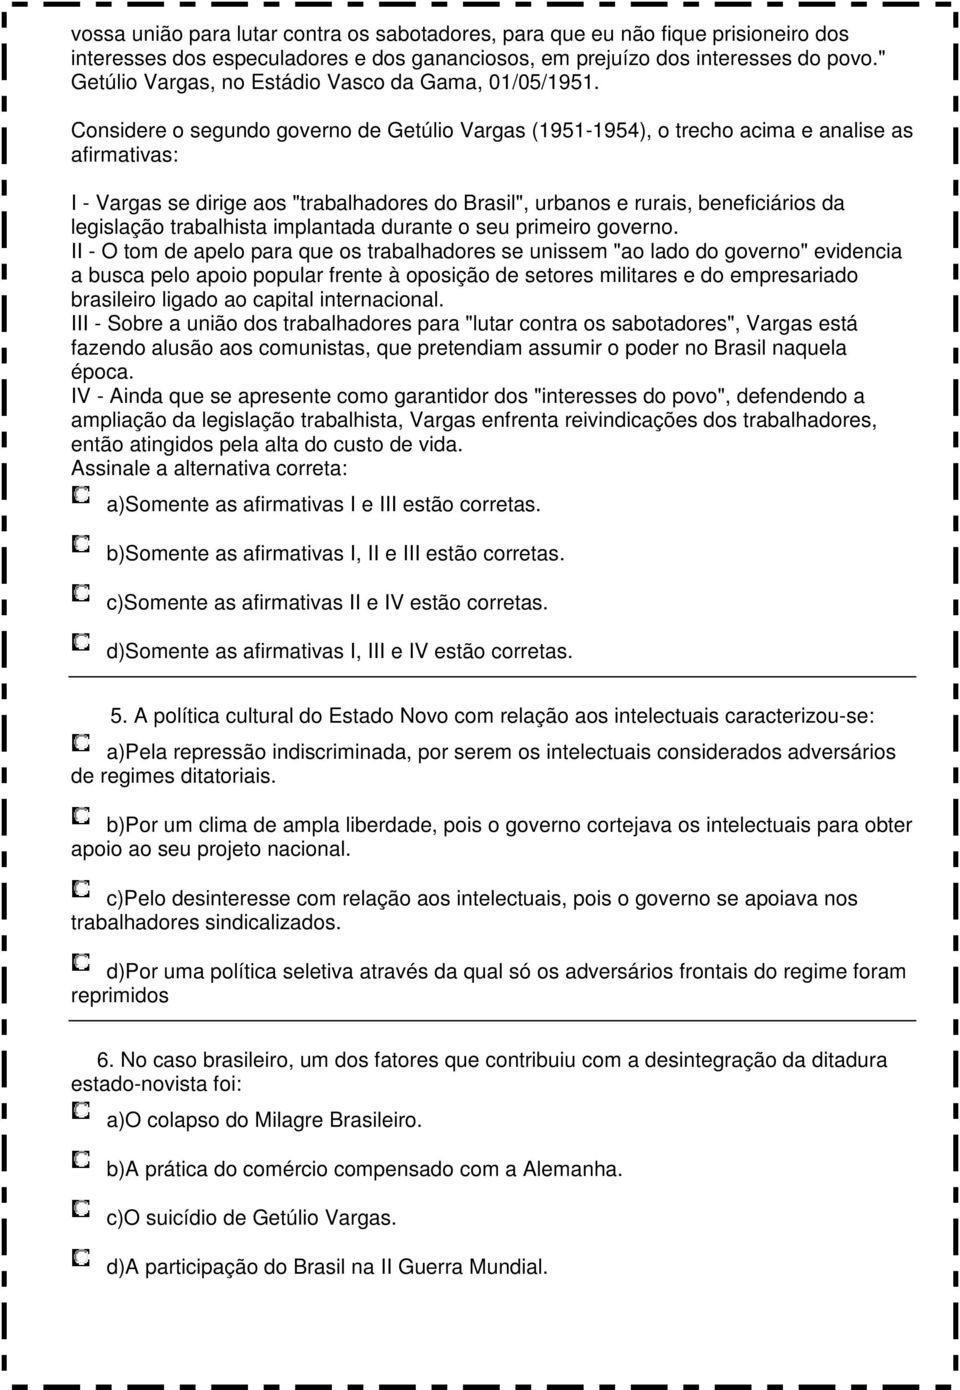 Considere o segundo governo de Getúlio Vargas (1951-1954), o trecho acima e analise as afirmativas: I - Vargas se dirige aos "trabalhadores do Brasil", urbanos e rurais, beneficiários da legislação